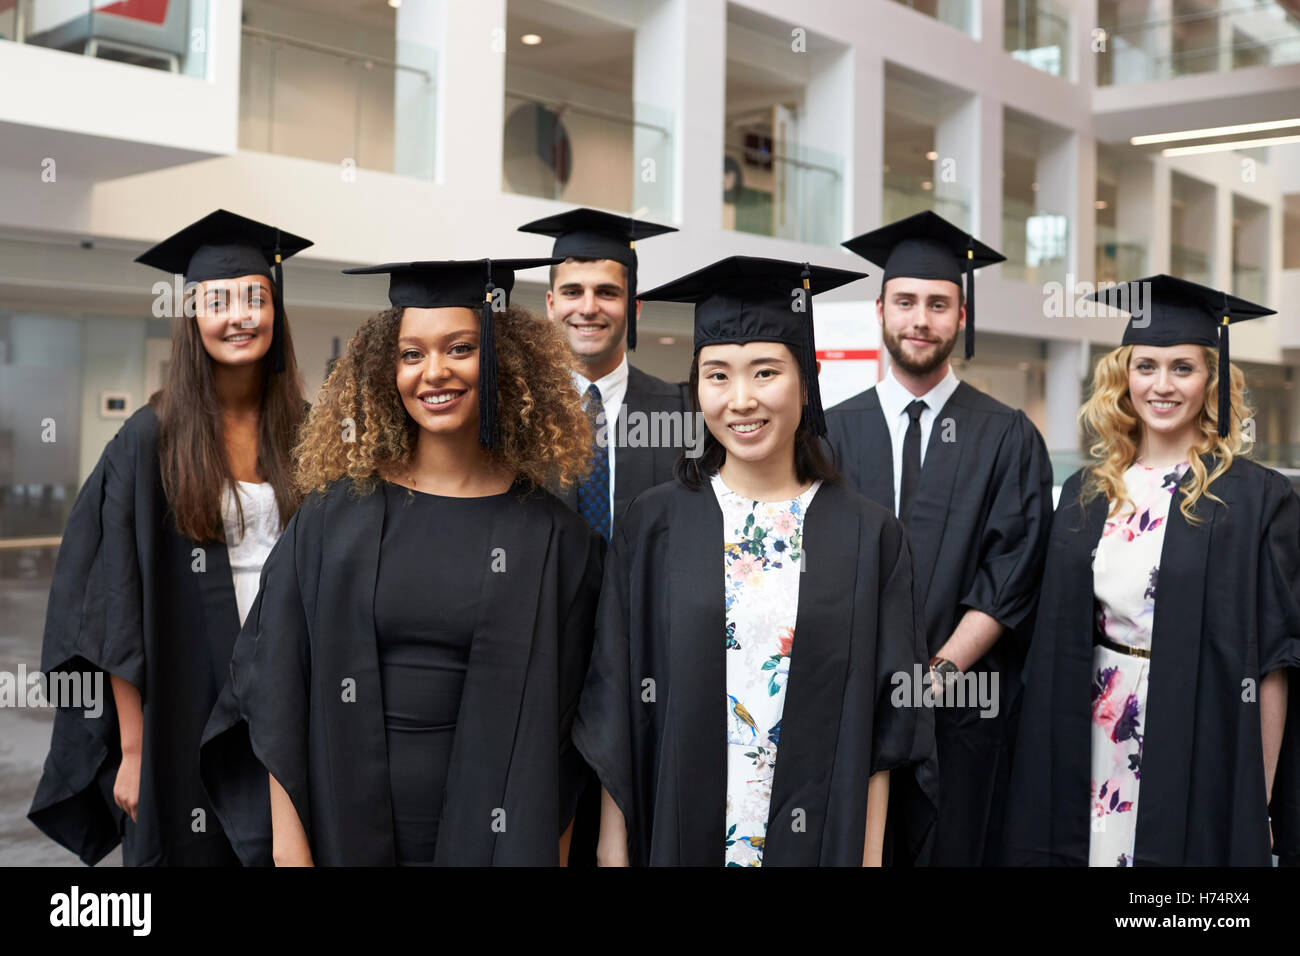 Portrait de groupe des diplômés universitaires au cap and gown Banque D'Images